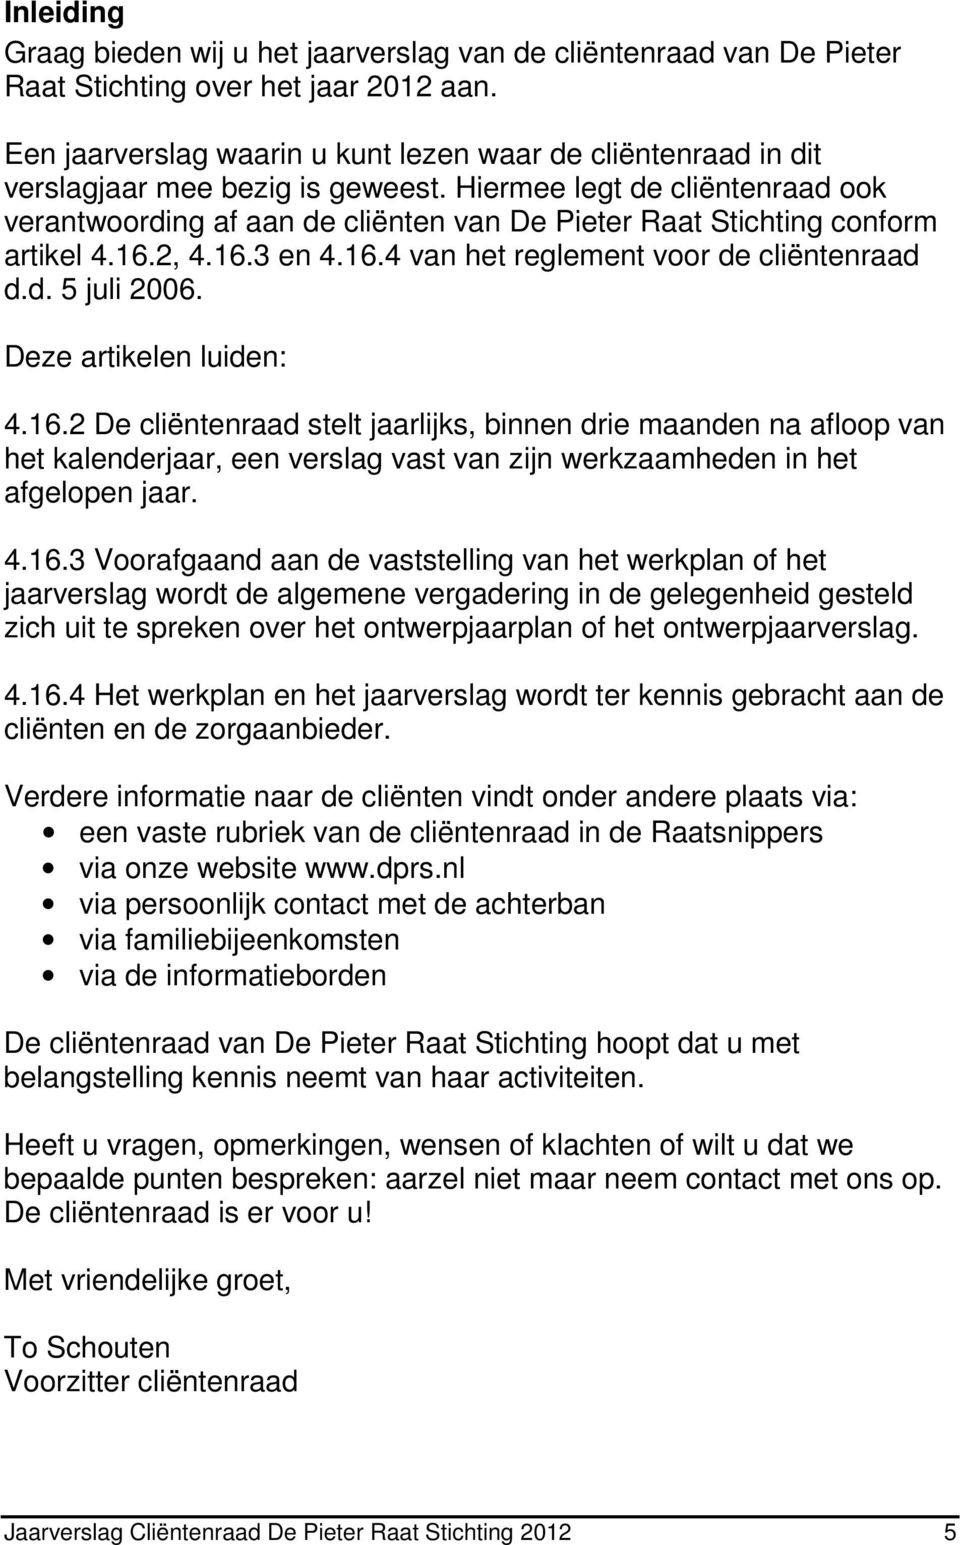 Hiermee legt de cliëntenraad ook verantwoording af aan de cliënten van De Pieter Raat Stichting conform artikel 4.16.2, 4.16.3 en 4.16.4 van het reglement voor de cliëntenraad d.d. 5 juli 2006.